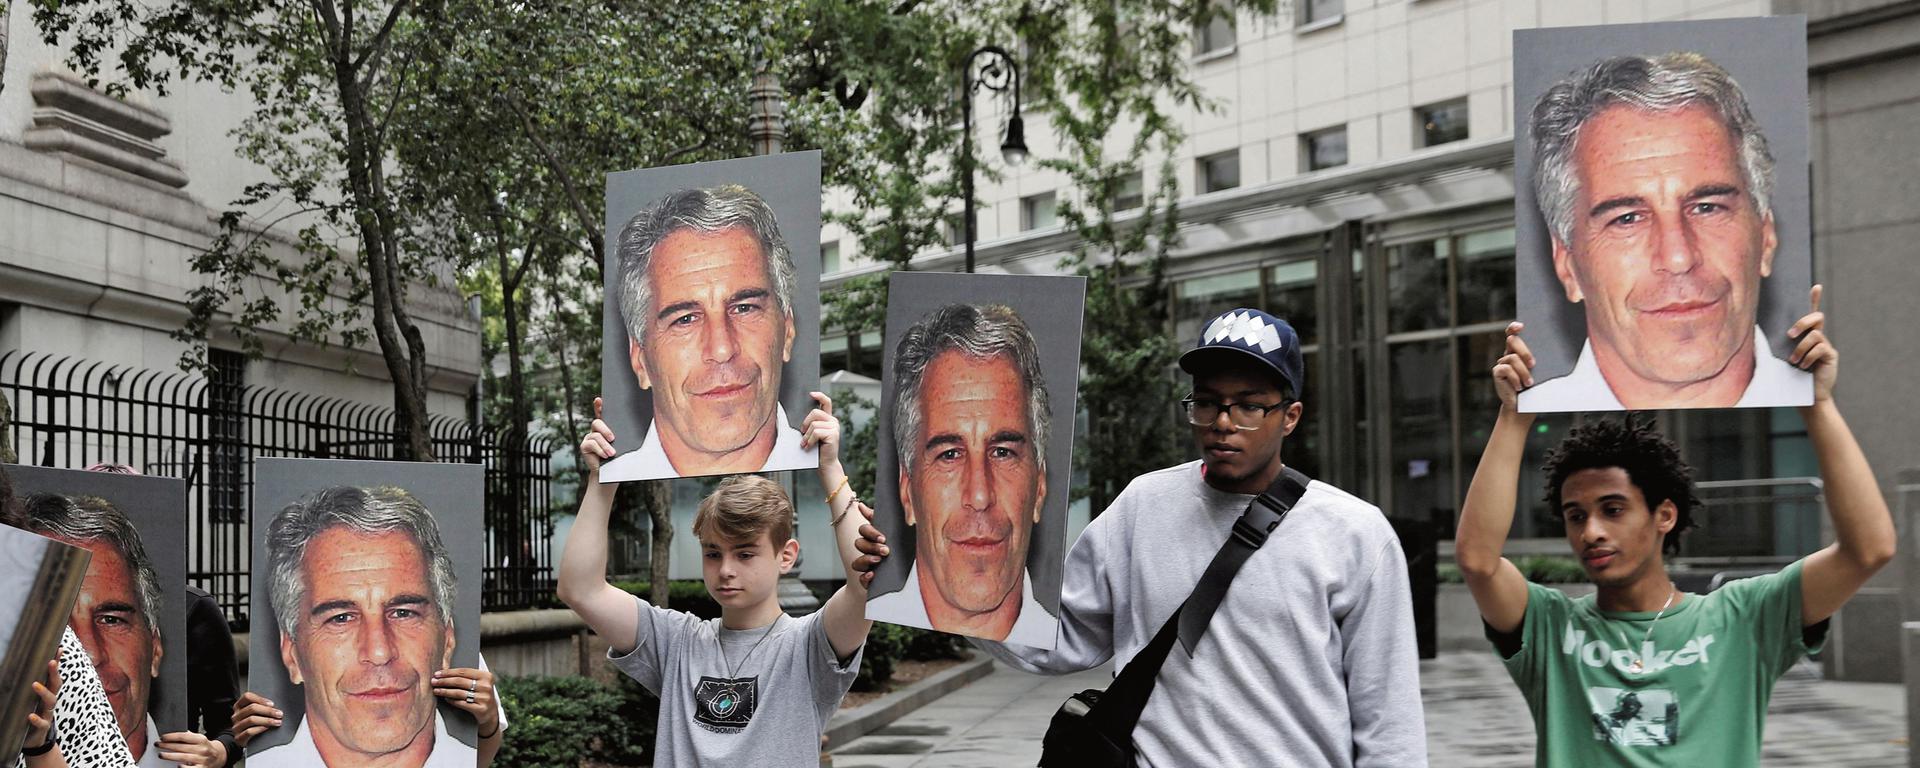 Los documentos del caso Epstein: de los poderosos y famosos mencionados a las fake news